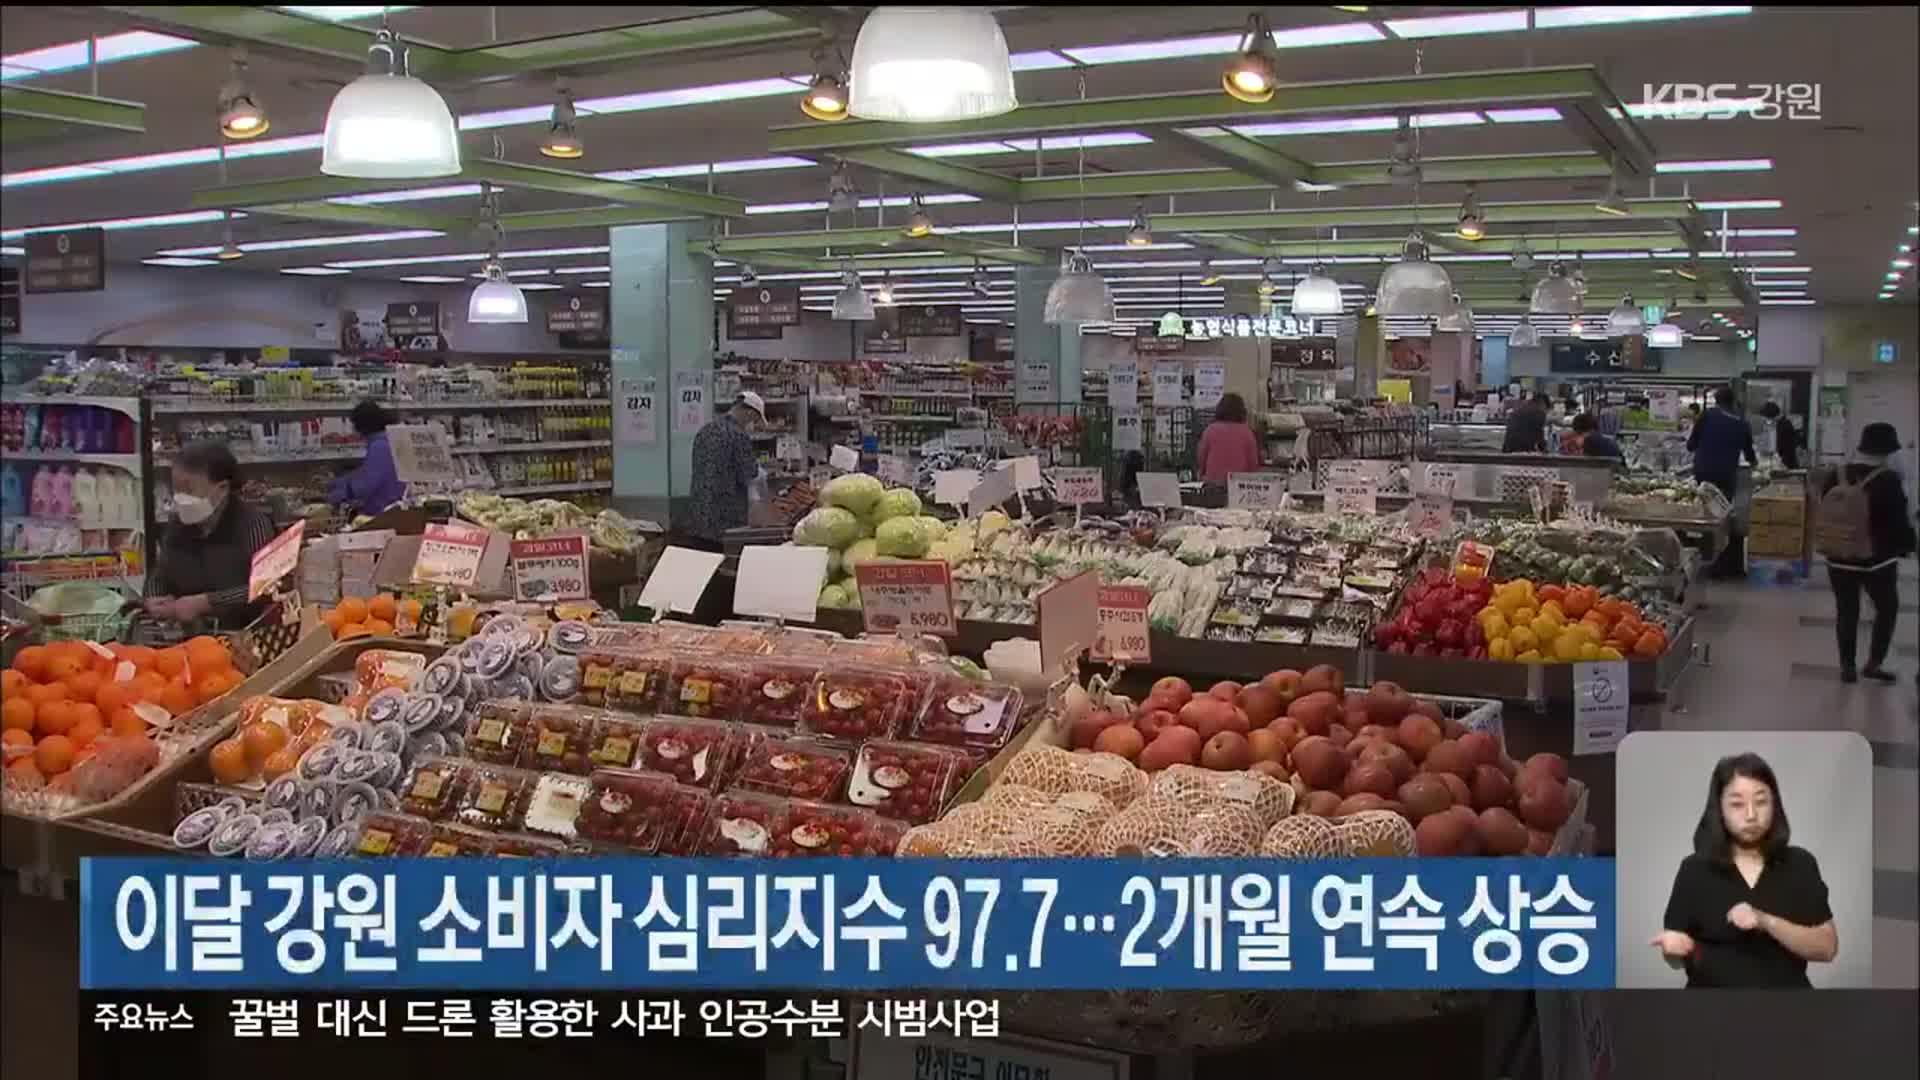 이달 강원 소비자 심리지수 97.7…2개월 연속 상승